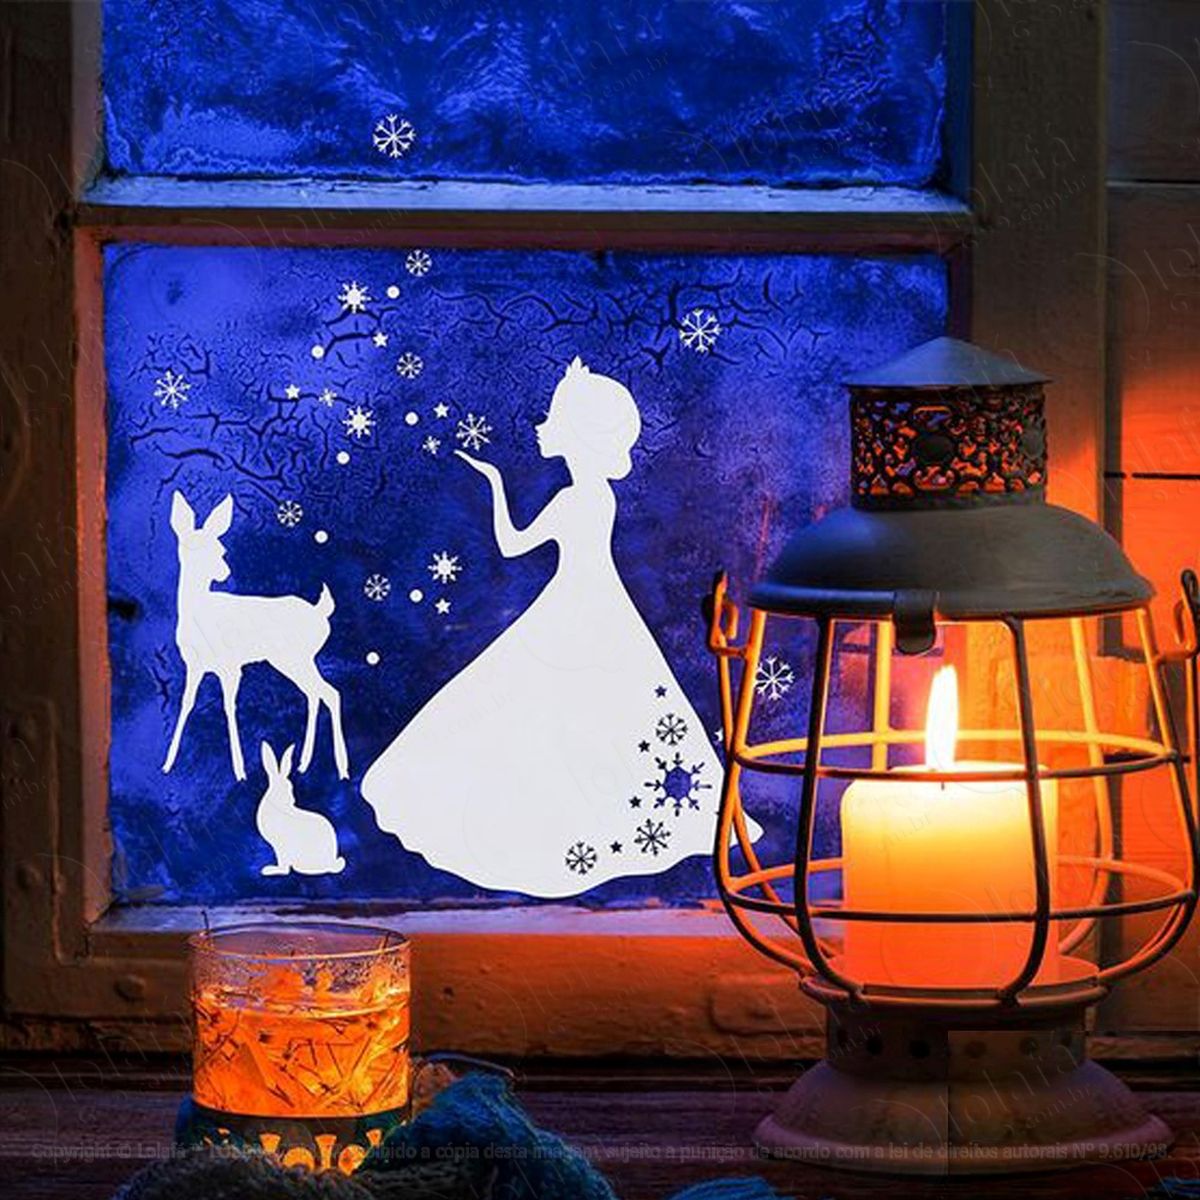 alce e princesa adesivo de natal para vitrine, parede, porta de vidro - decoração natalina mod:259